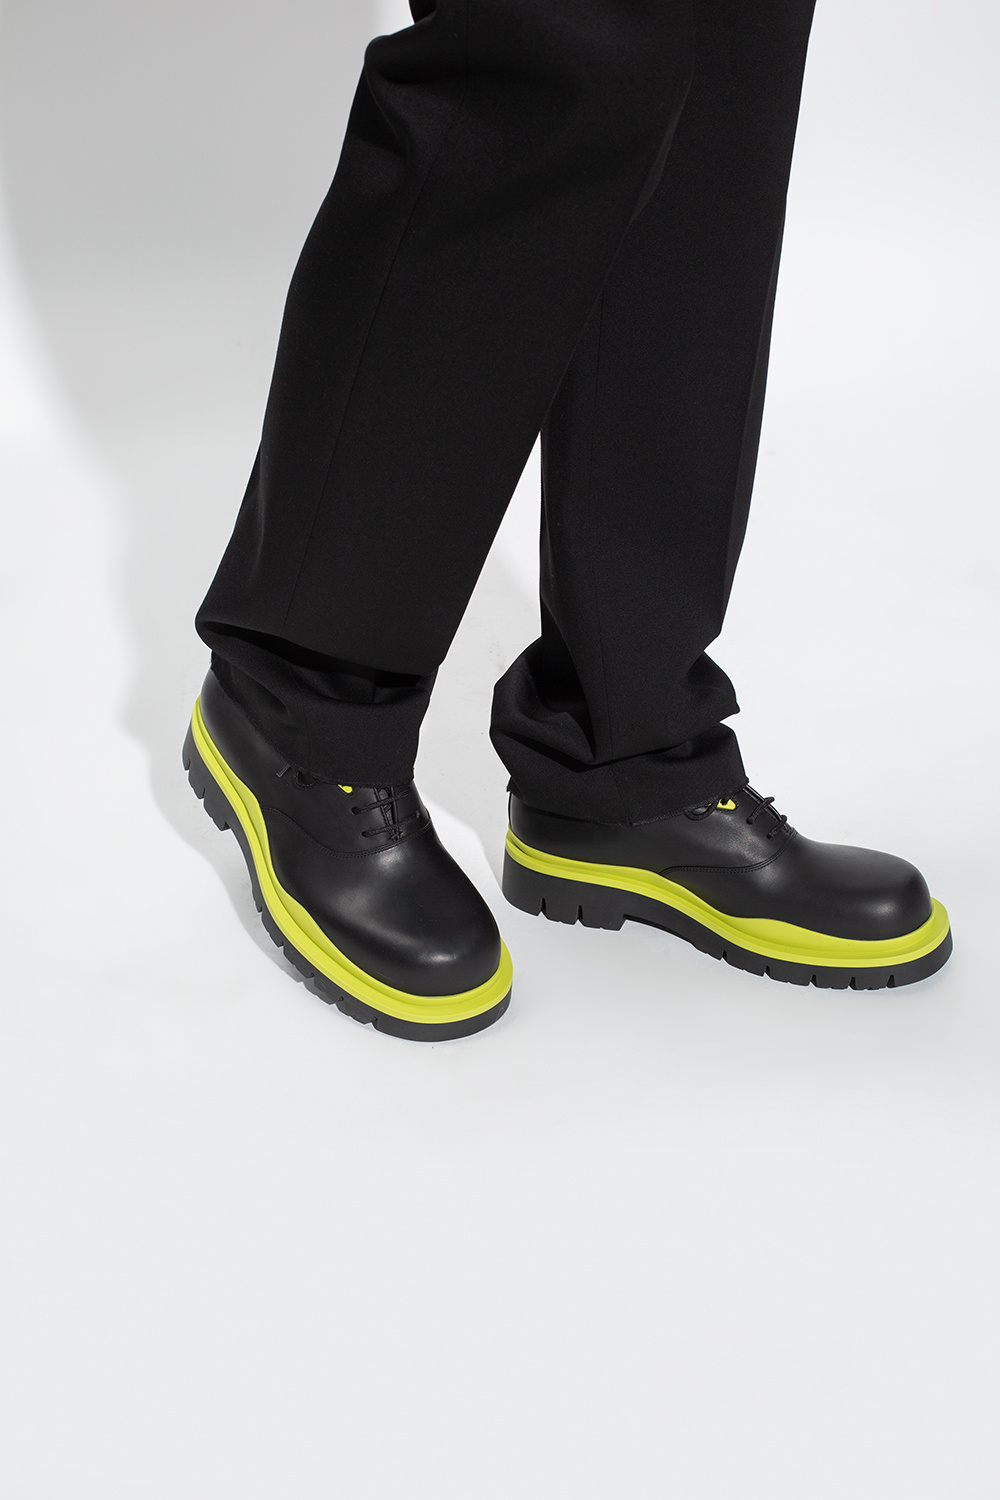 Bottega Veneta ‘Tire’ leather Jacquemus shoes